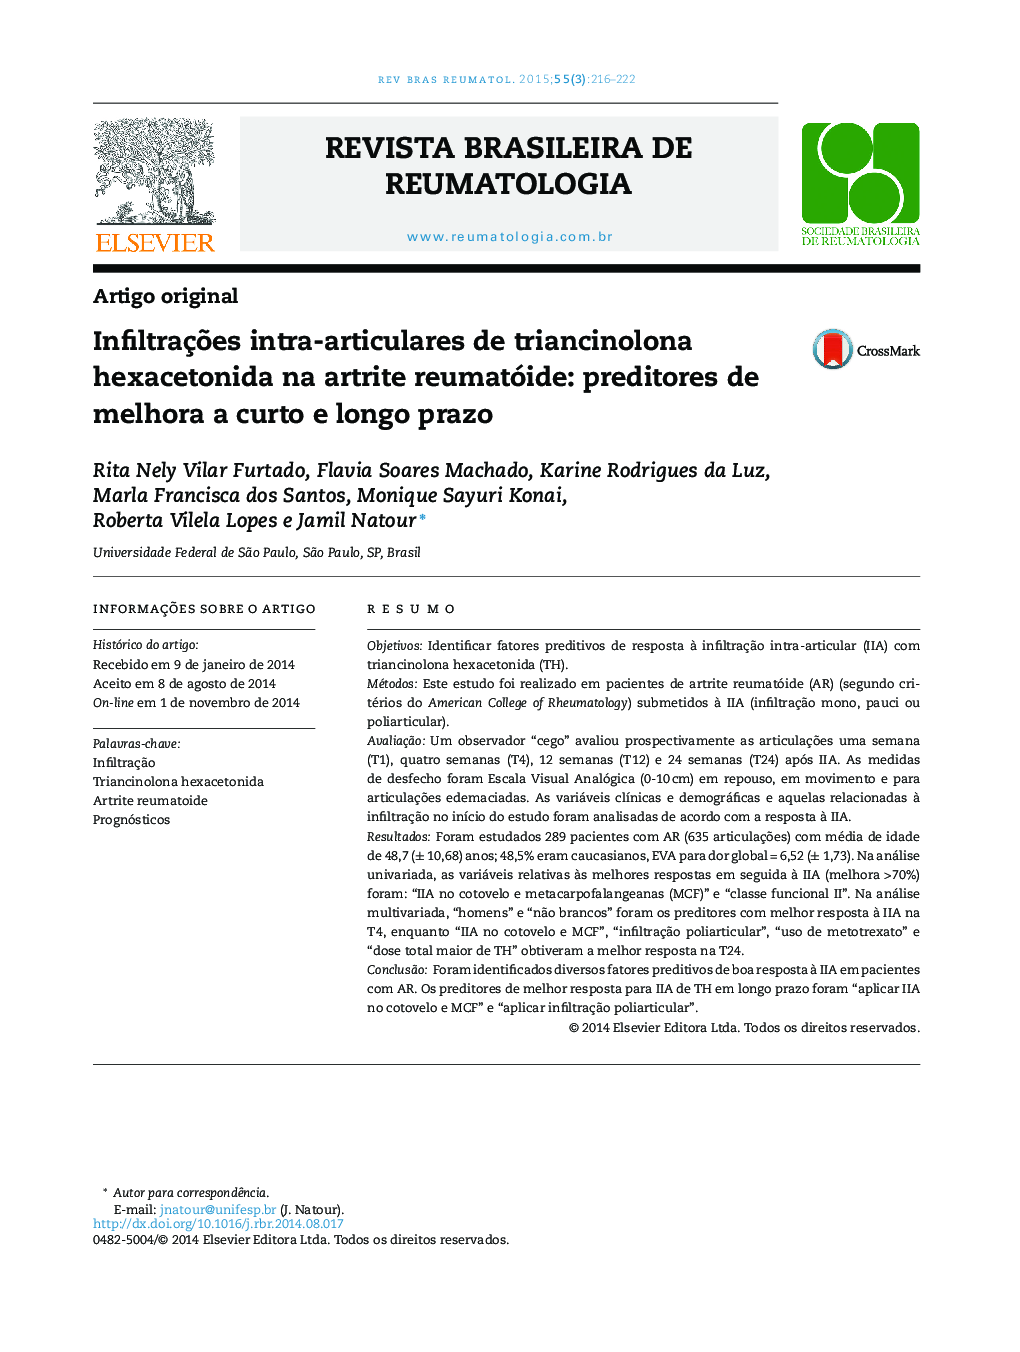 Infiltrações intra‐articulares de triancinolona hexacetonida na artrite reumatóide: preditores de melhora a curto e longo prazo